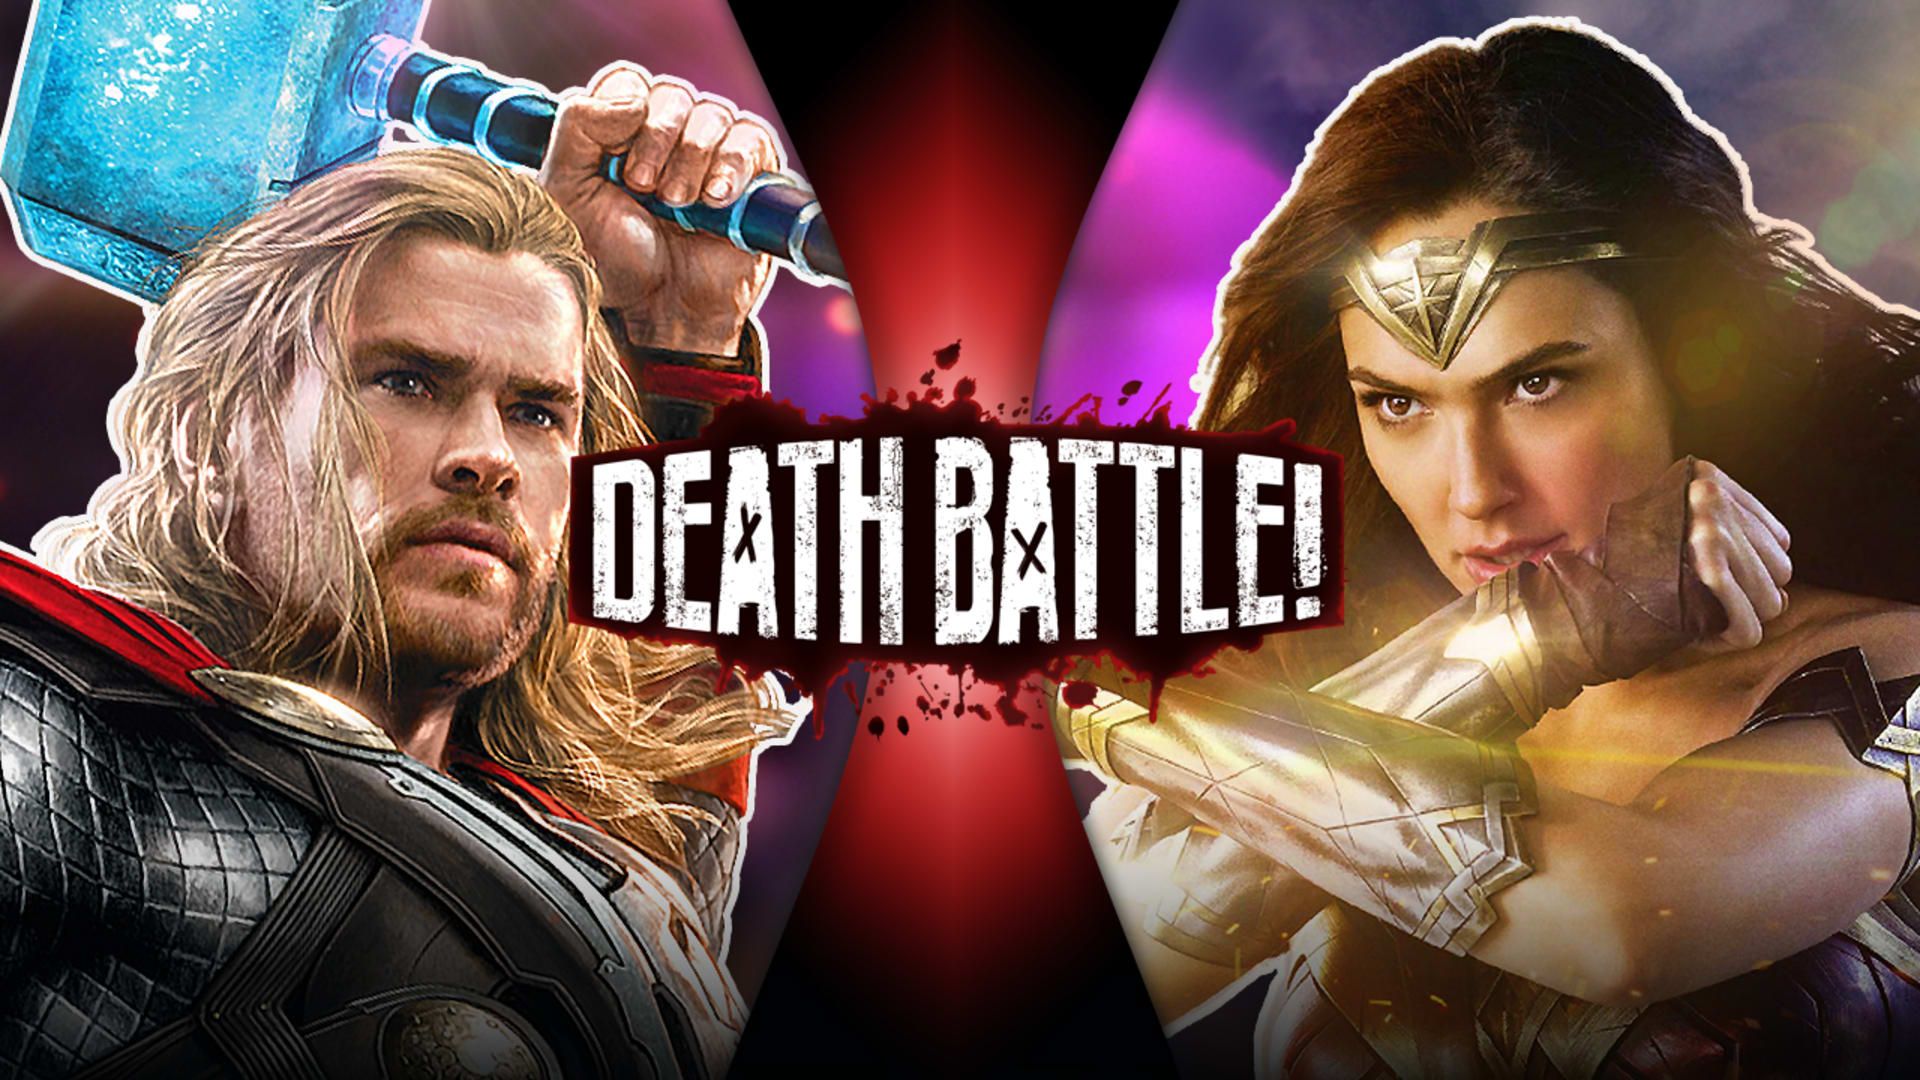 Thor VS Wonder Woman (Marvel VS DC Comics)